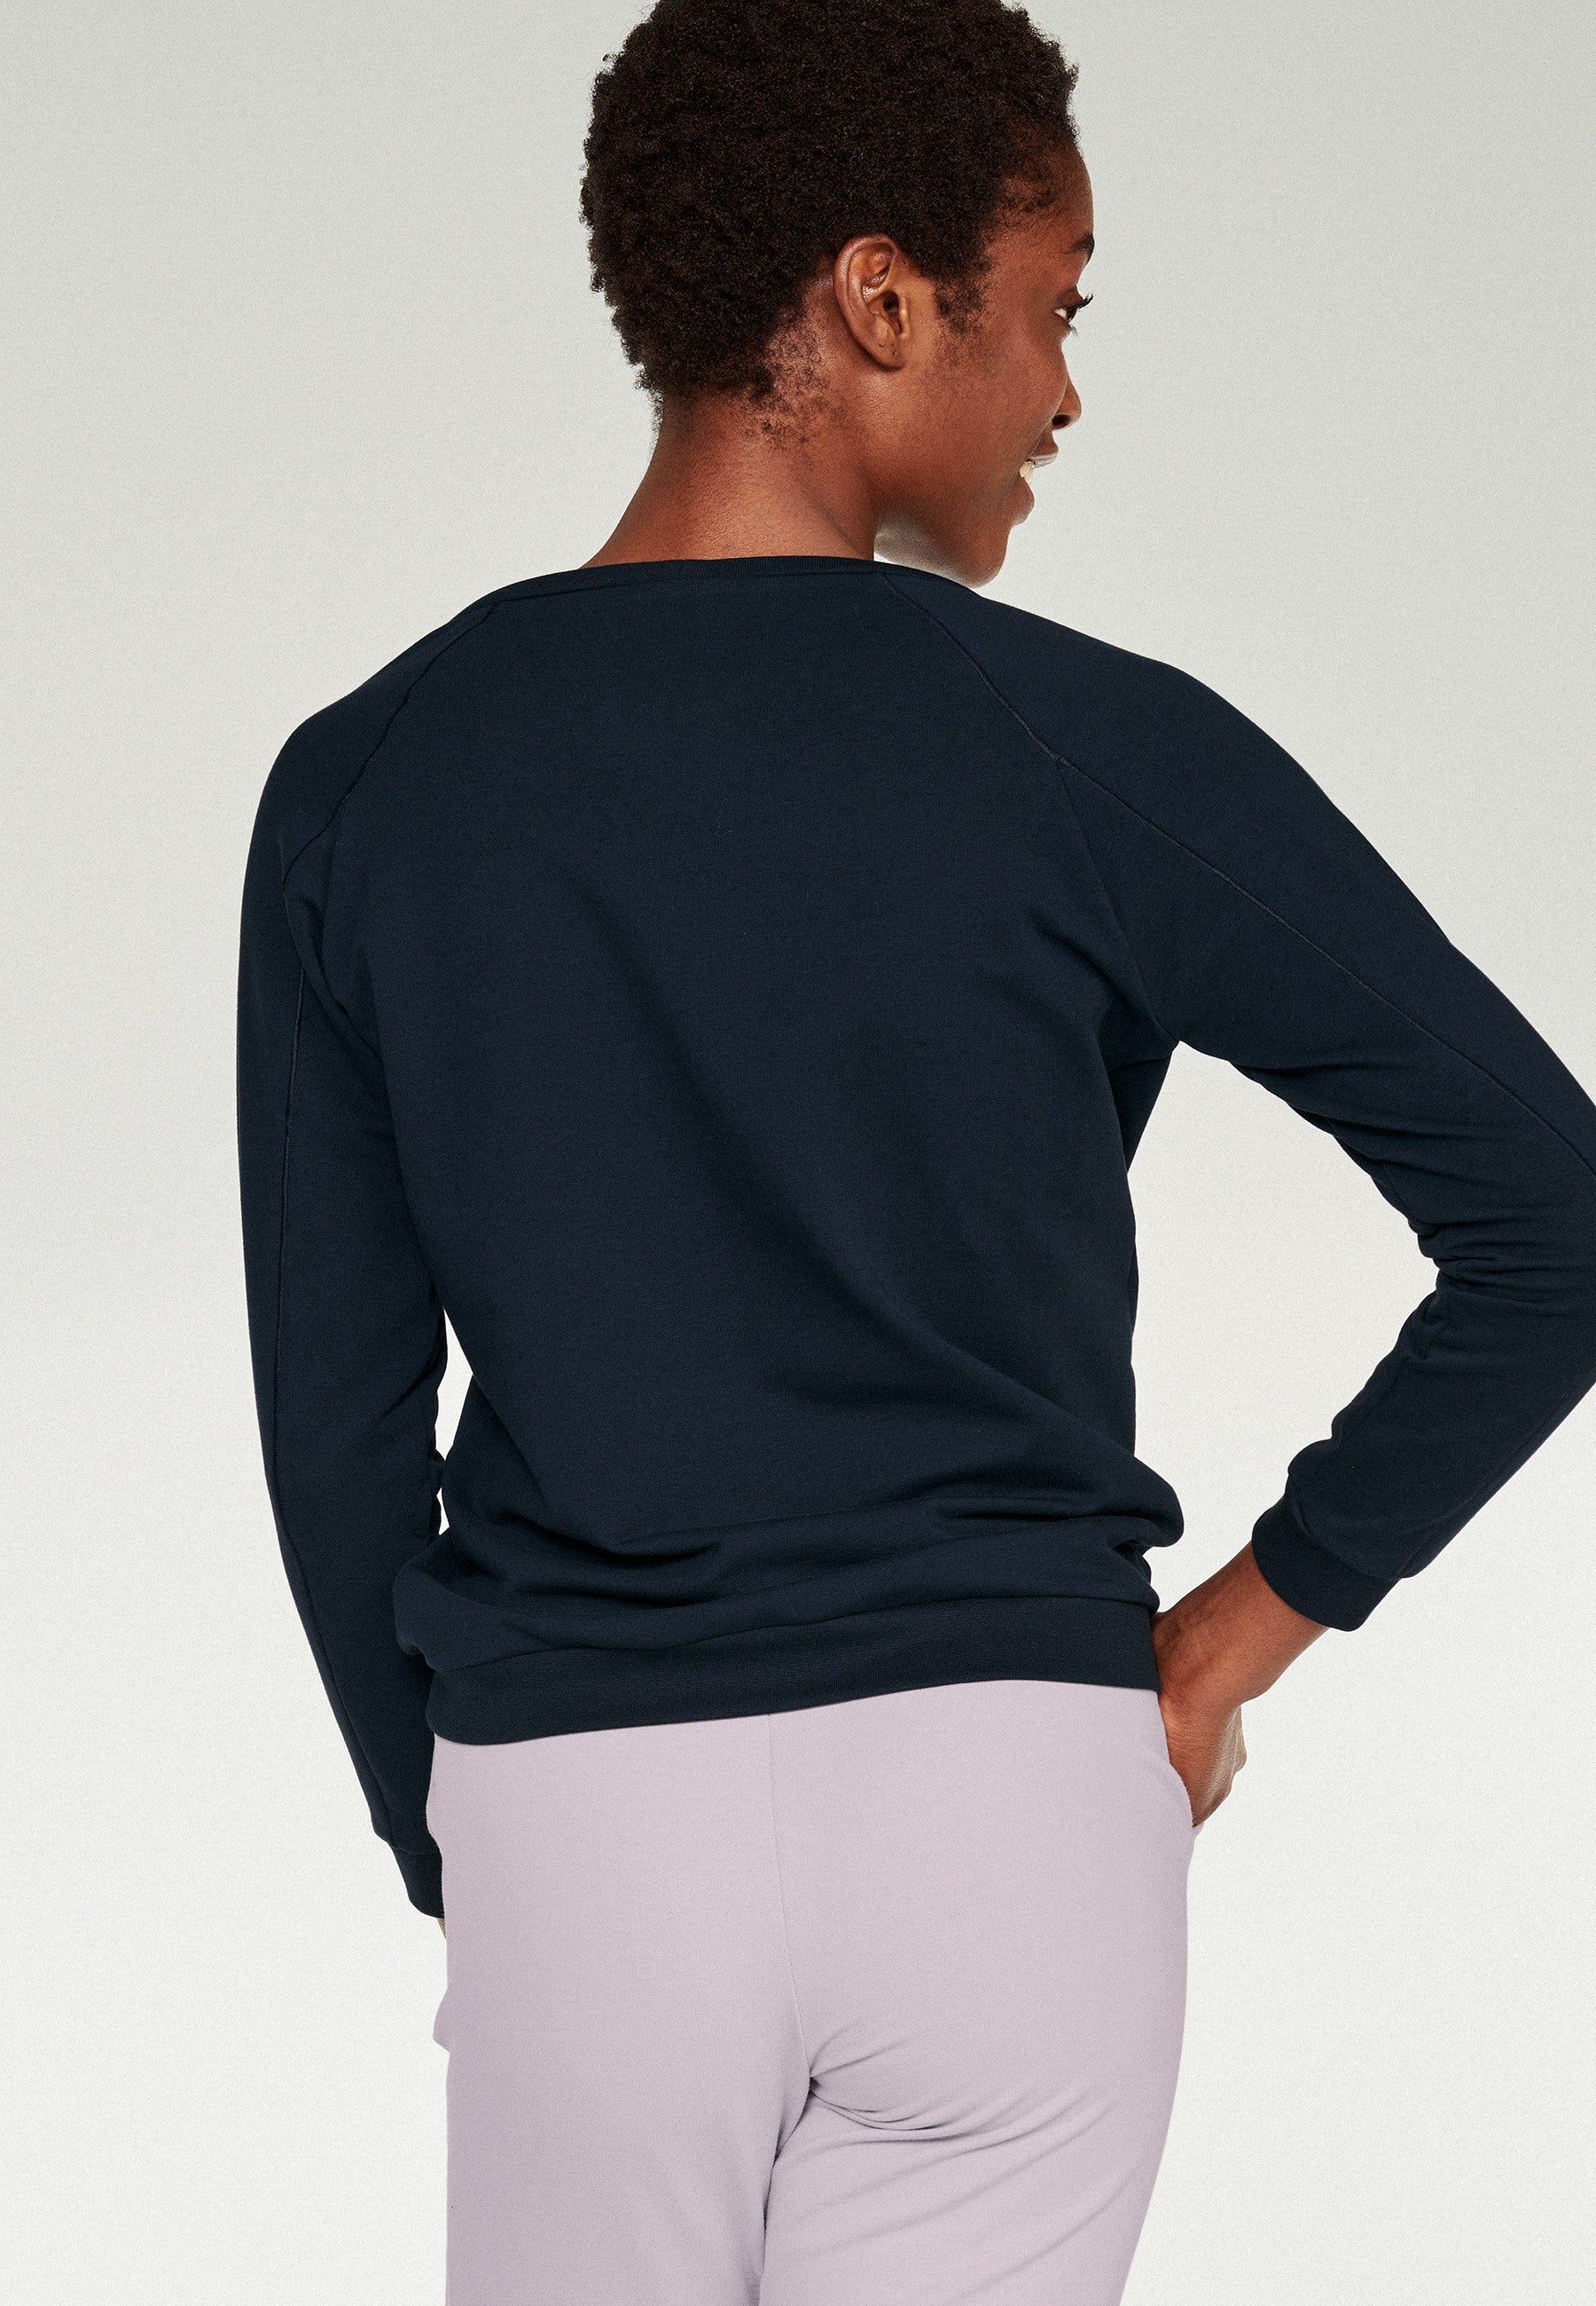 Camisa-suéter manga larga